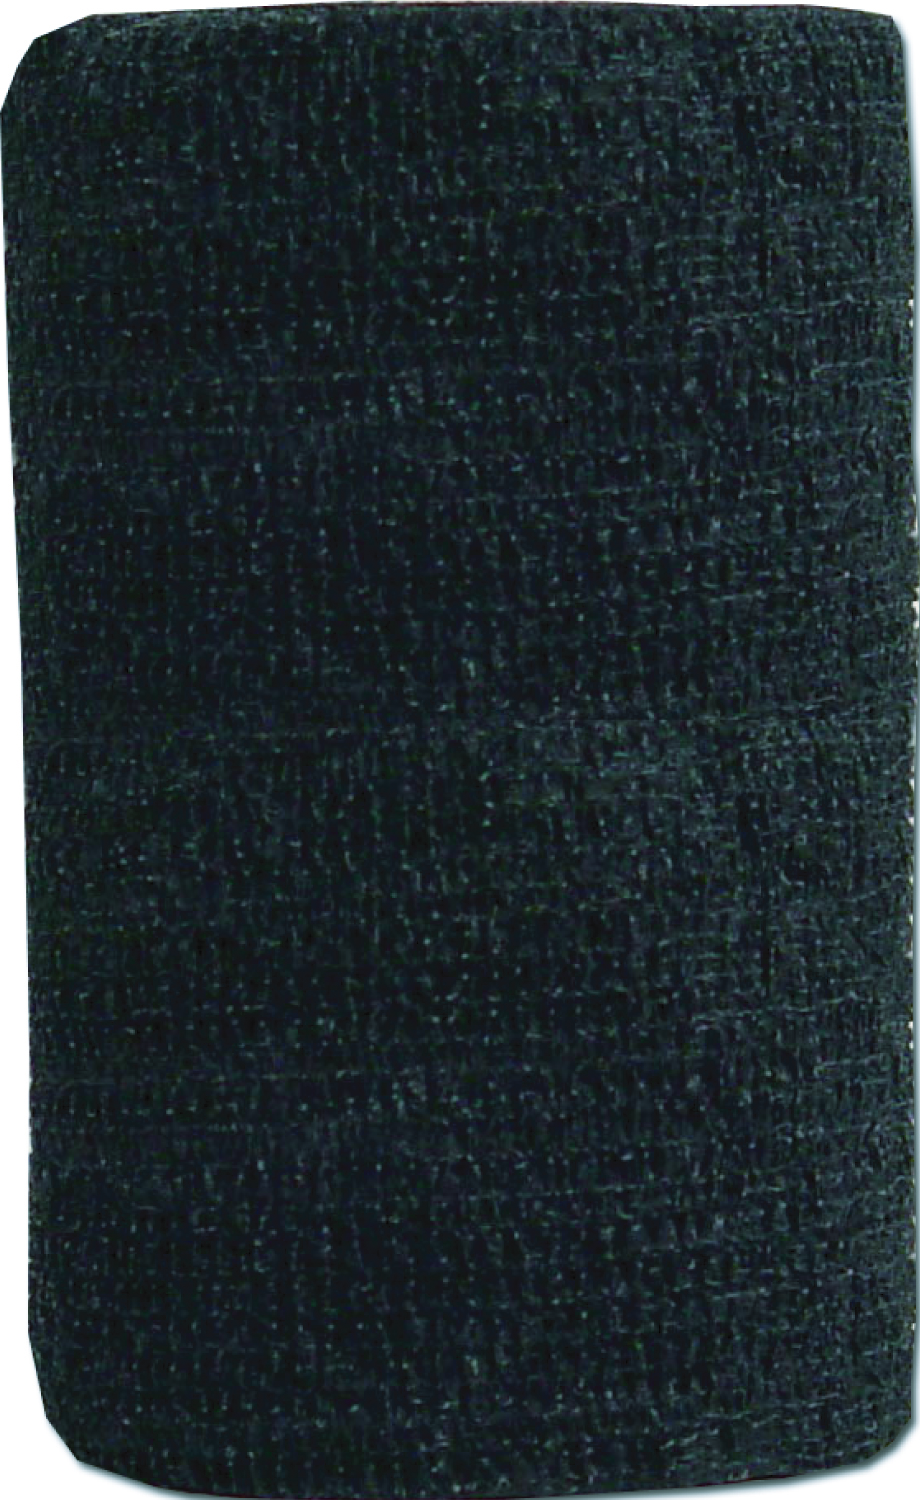 Co-Flex 4" x 5 yd Bandage Black